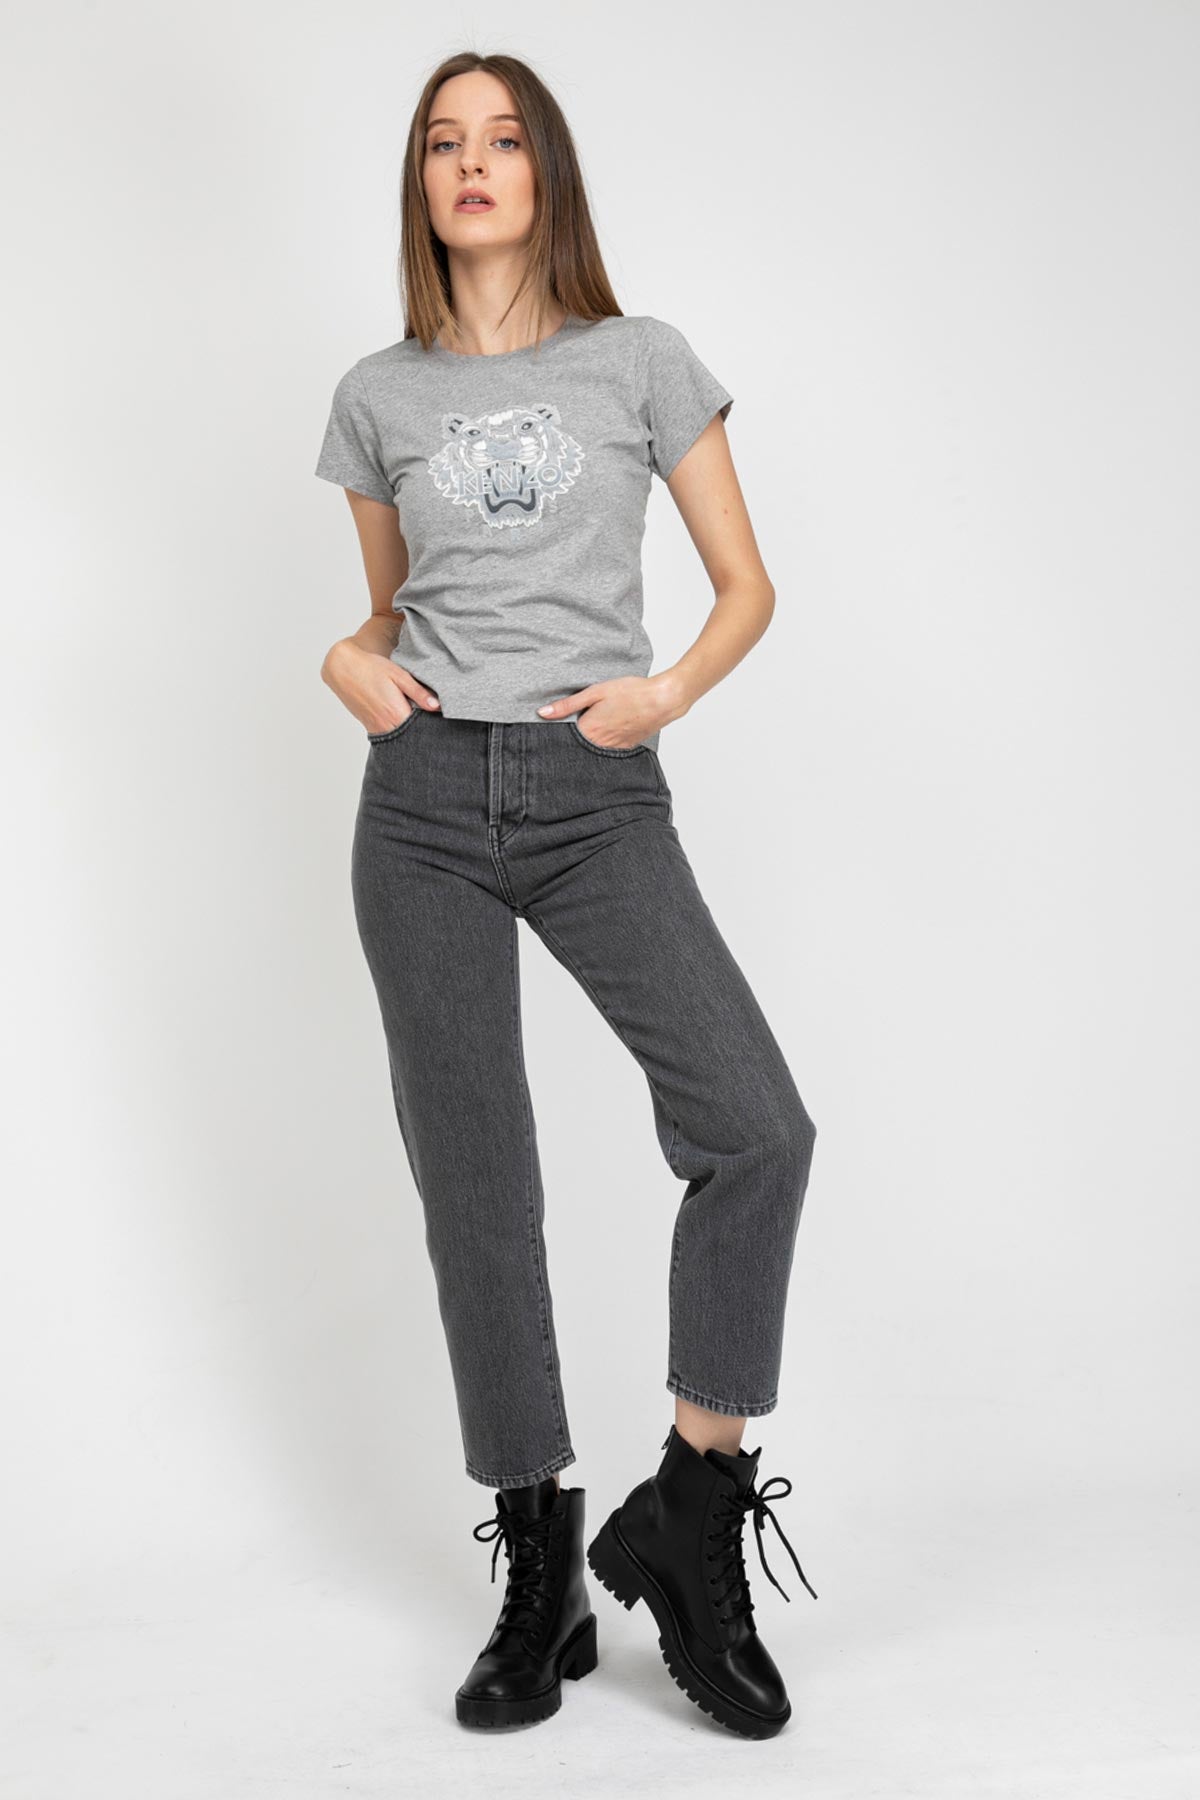 Kenzo Slim Fit Kaplan Logolu T-shirt-Libas Trendy Fashion Store